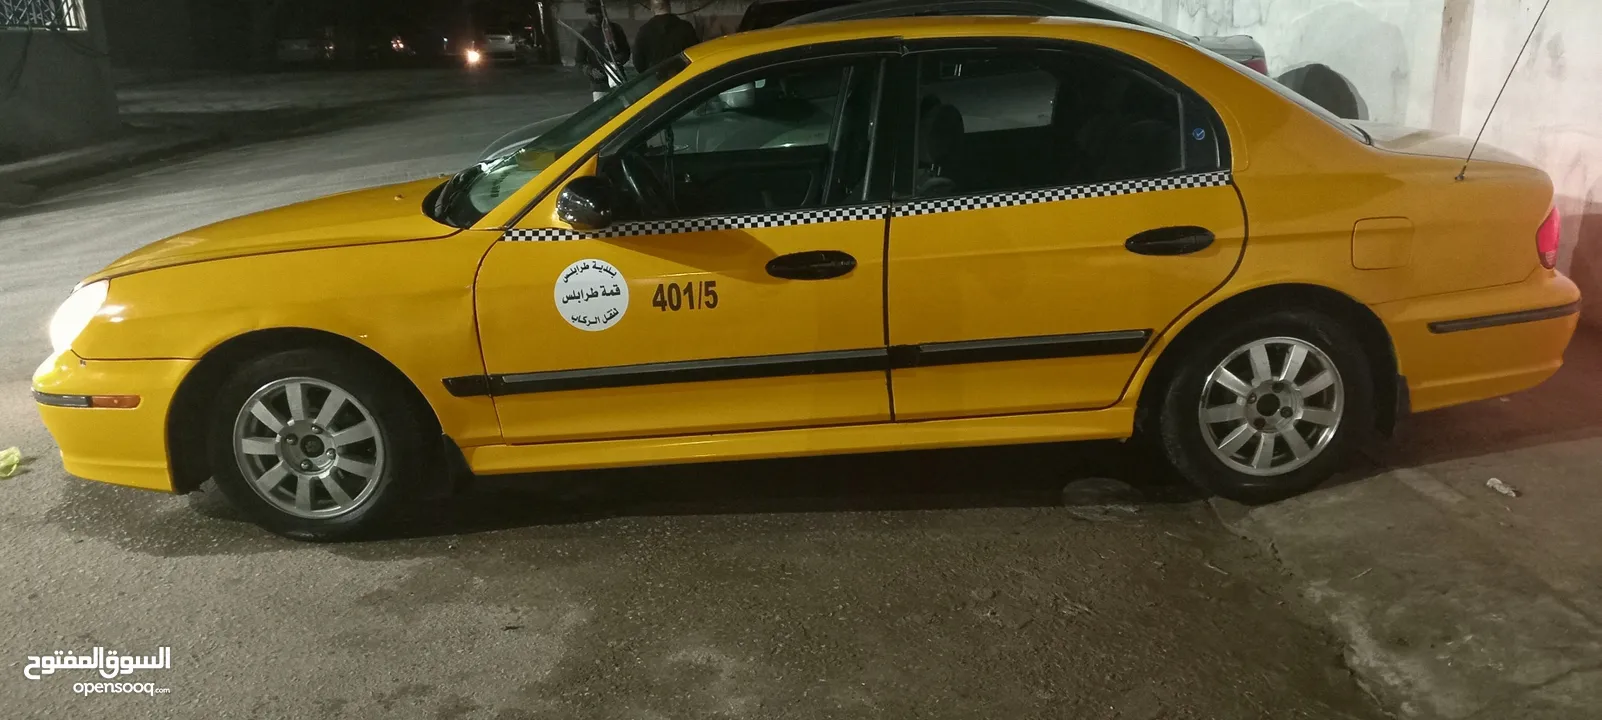 للبيع سوناتا تاكسي 2004ماشيه 133تبارك الله سيارة اي استفسار اتصل .  اتصل